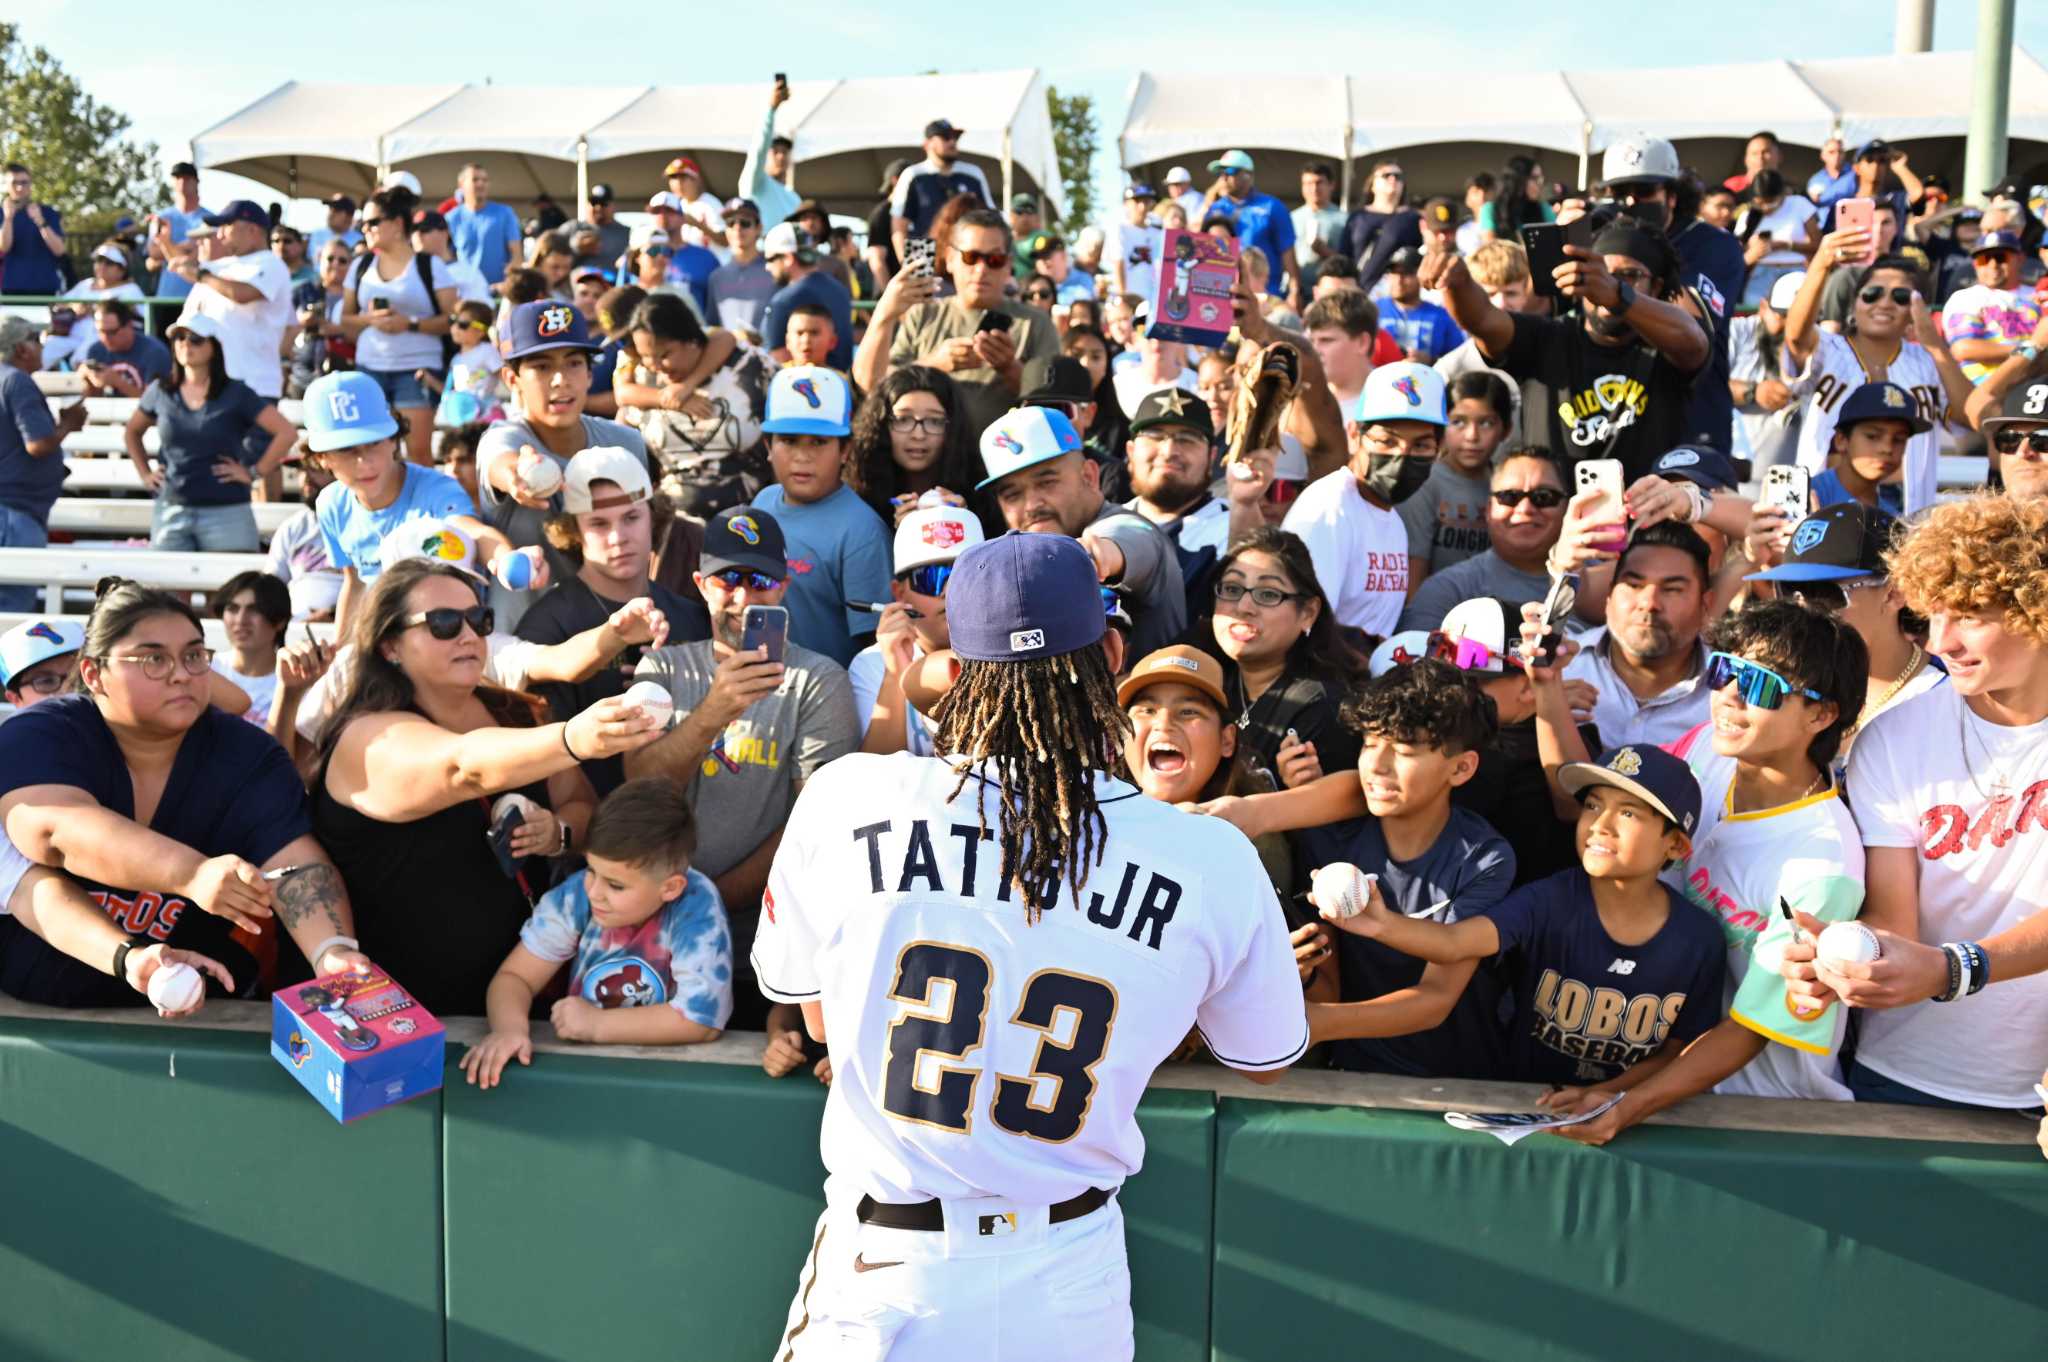 Fernando Tatis Jr. excites San Antonio Minor League Baseball